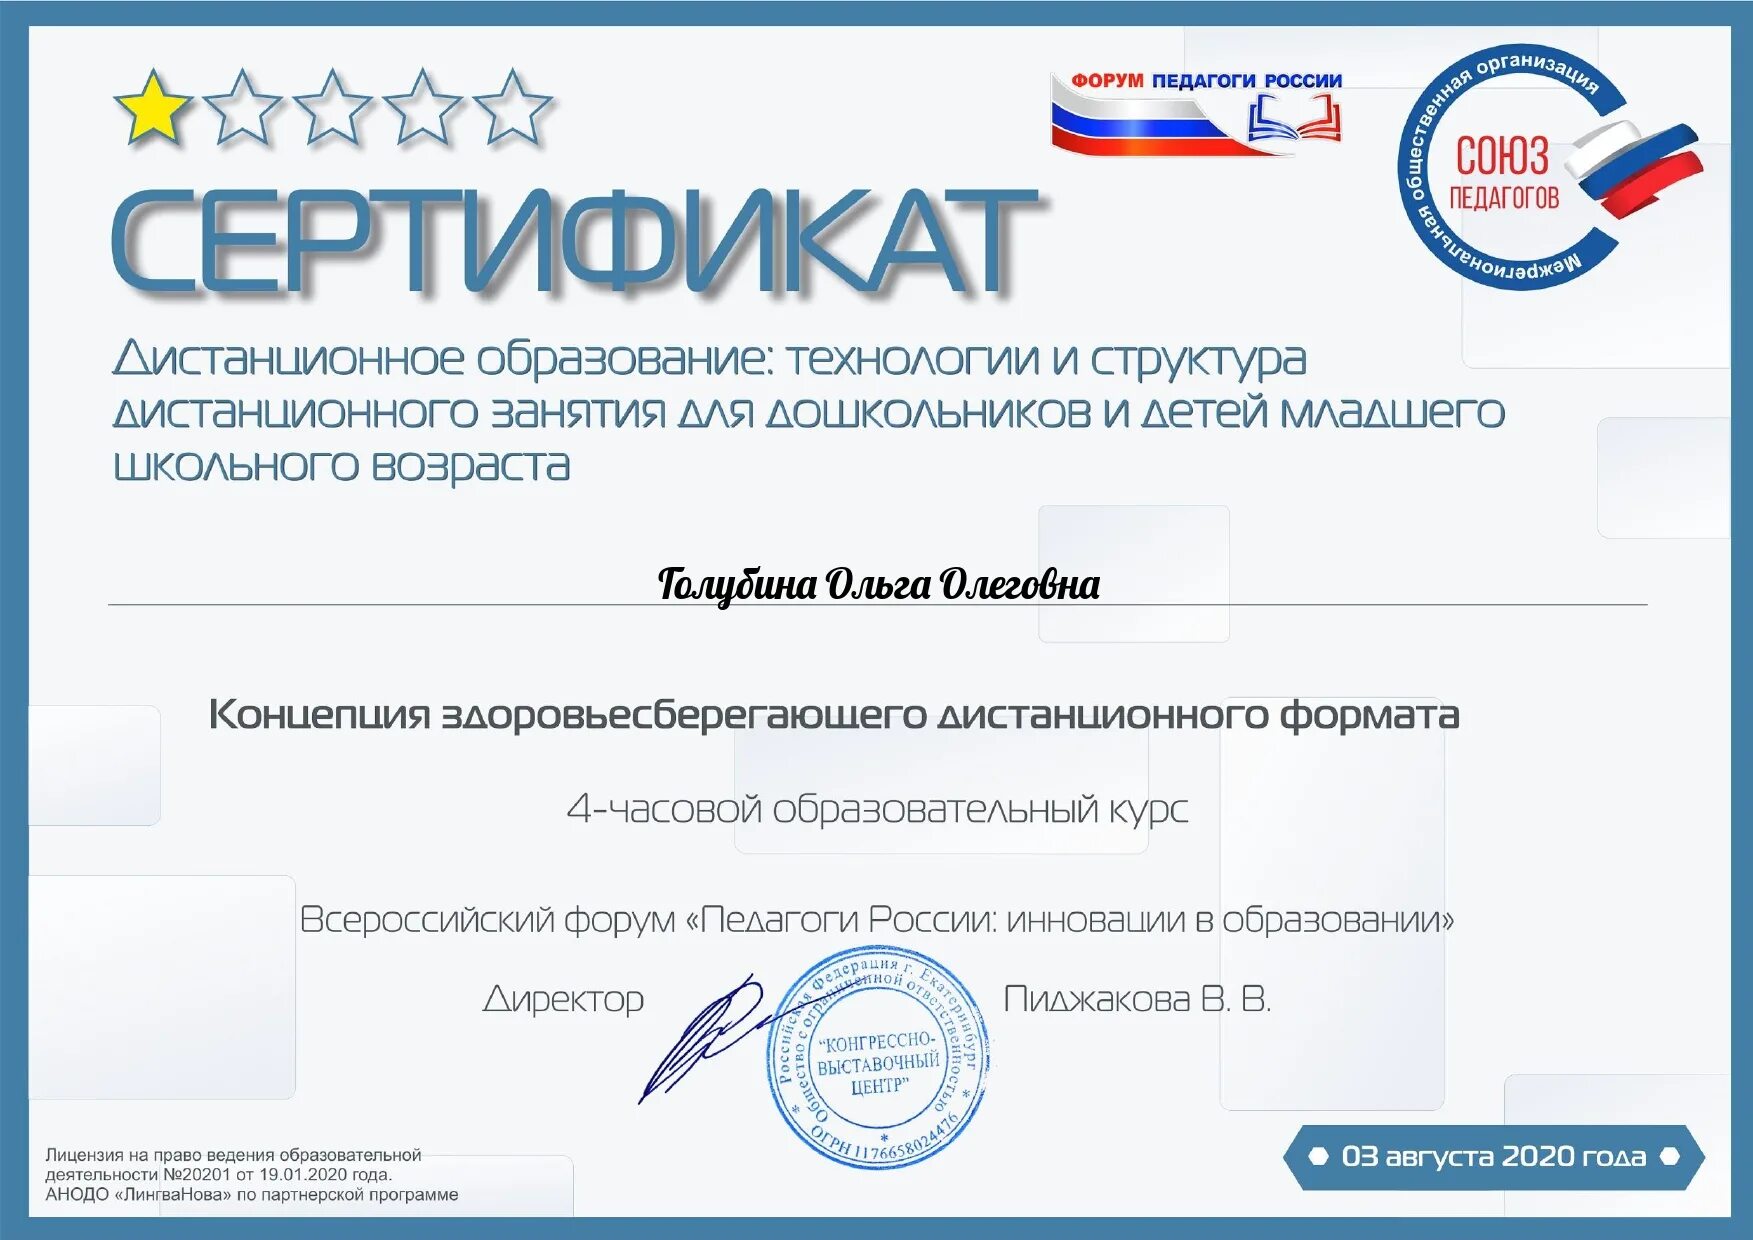 Воспитатели России сертификат. Сертификат учителю. Педагоги России сертификат. Сертификат дистанционно.